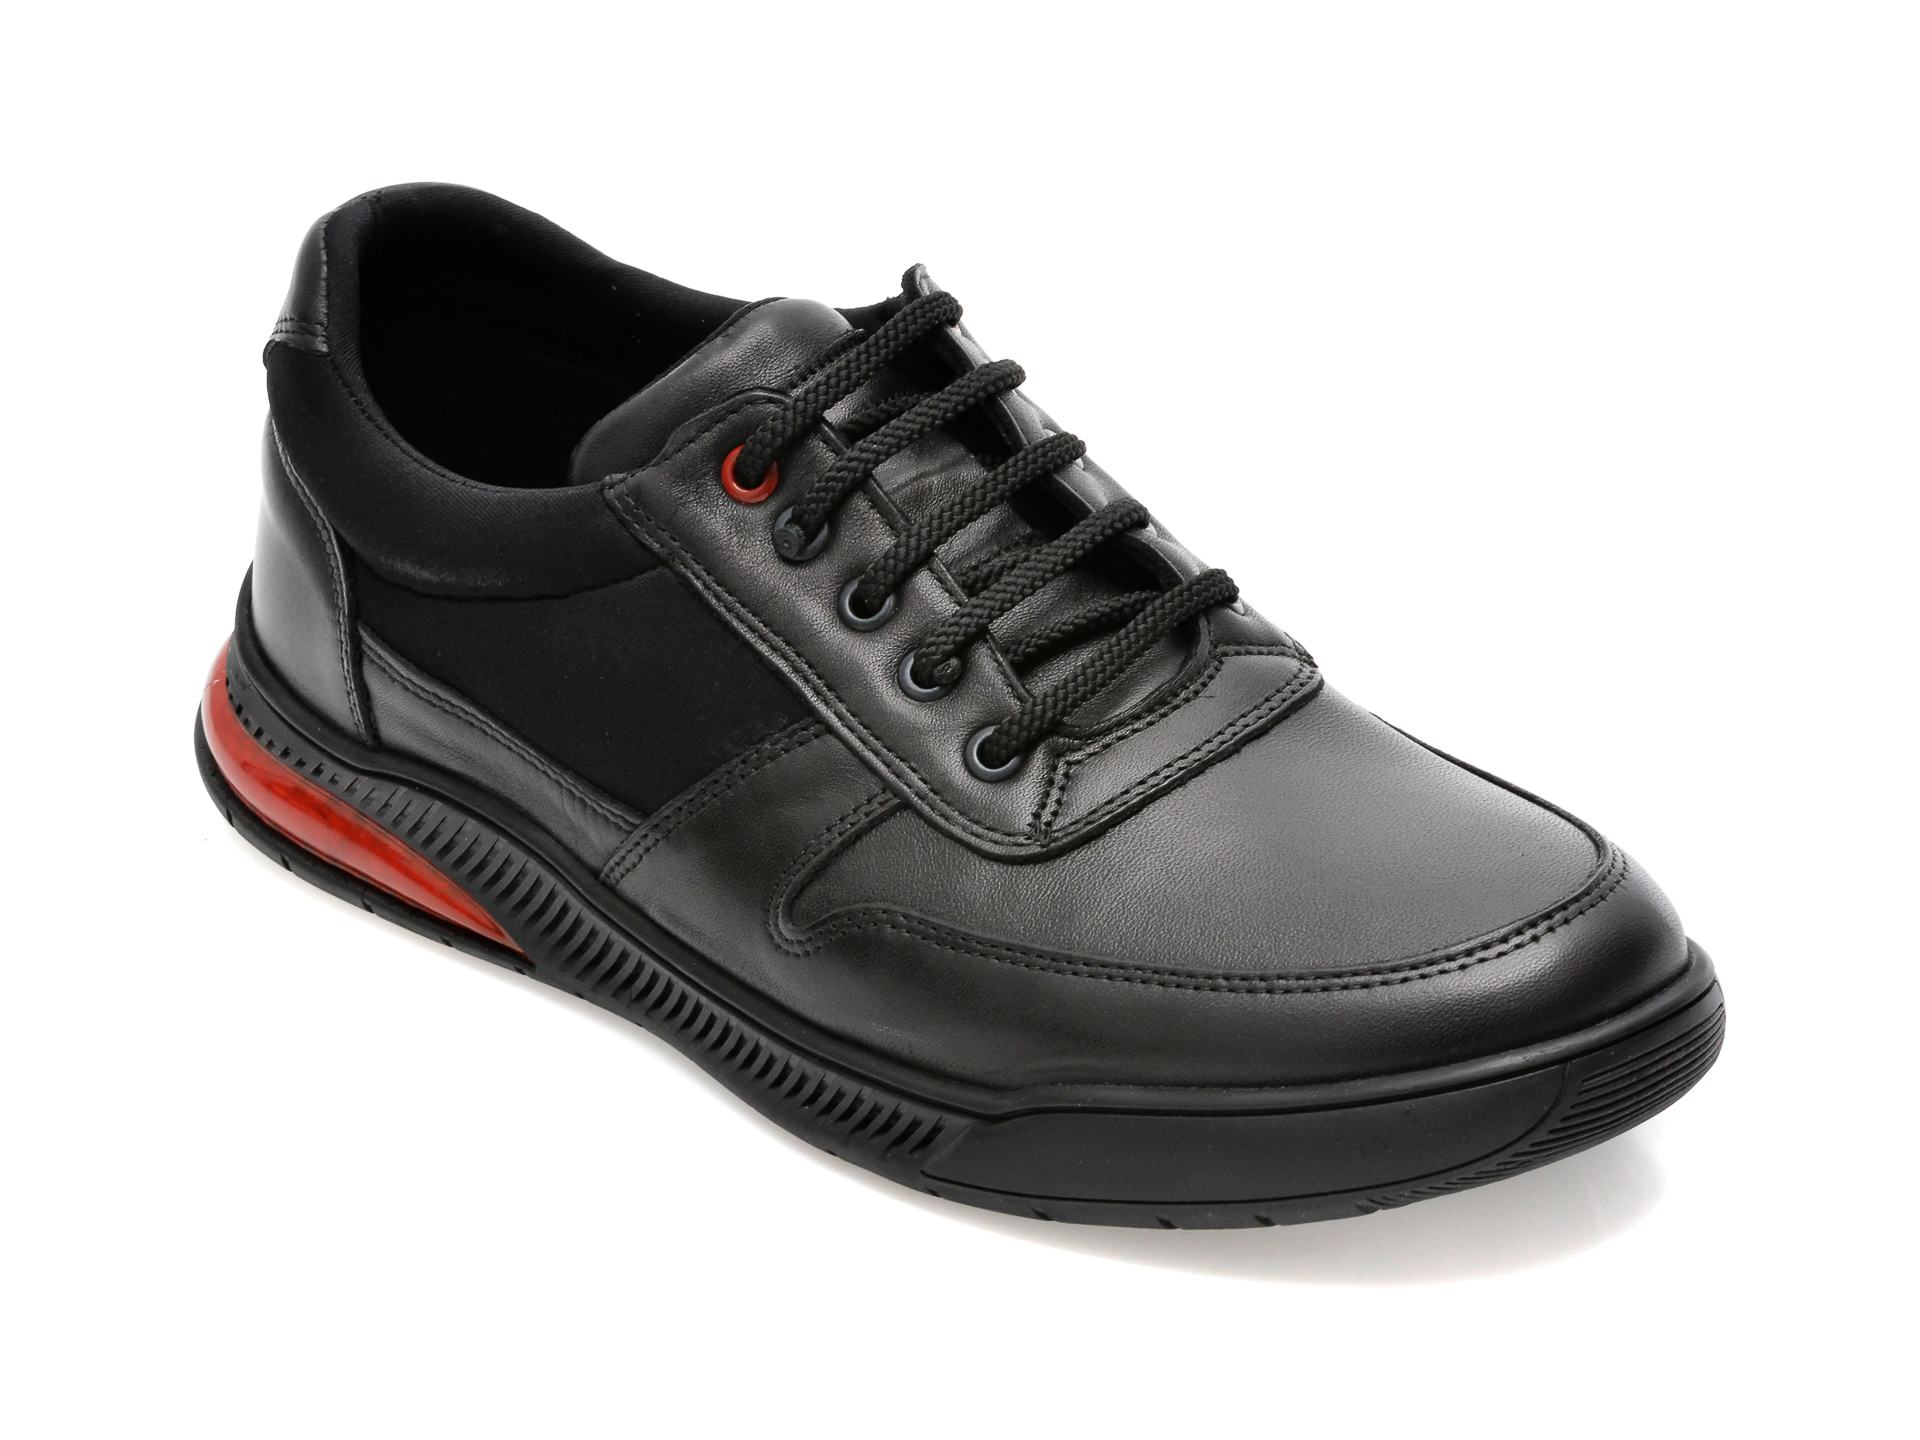 Pantofi OTTER negri, PZN2, din piele naturala /barbati/pantofi imagine noua